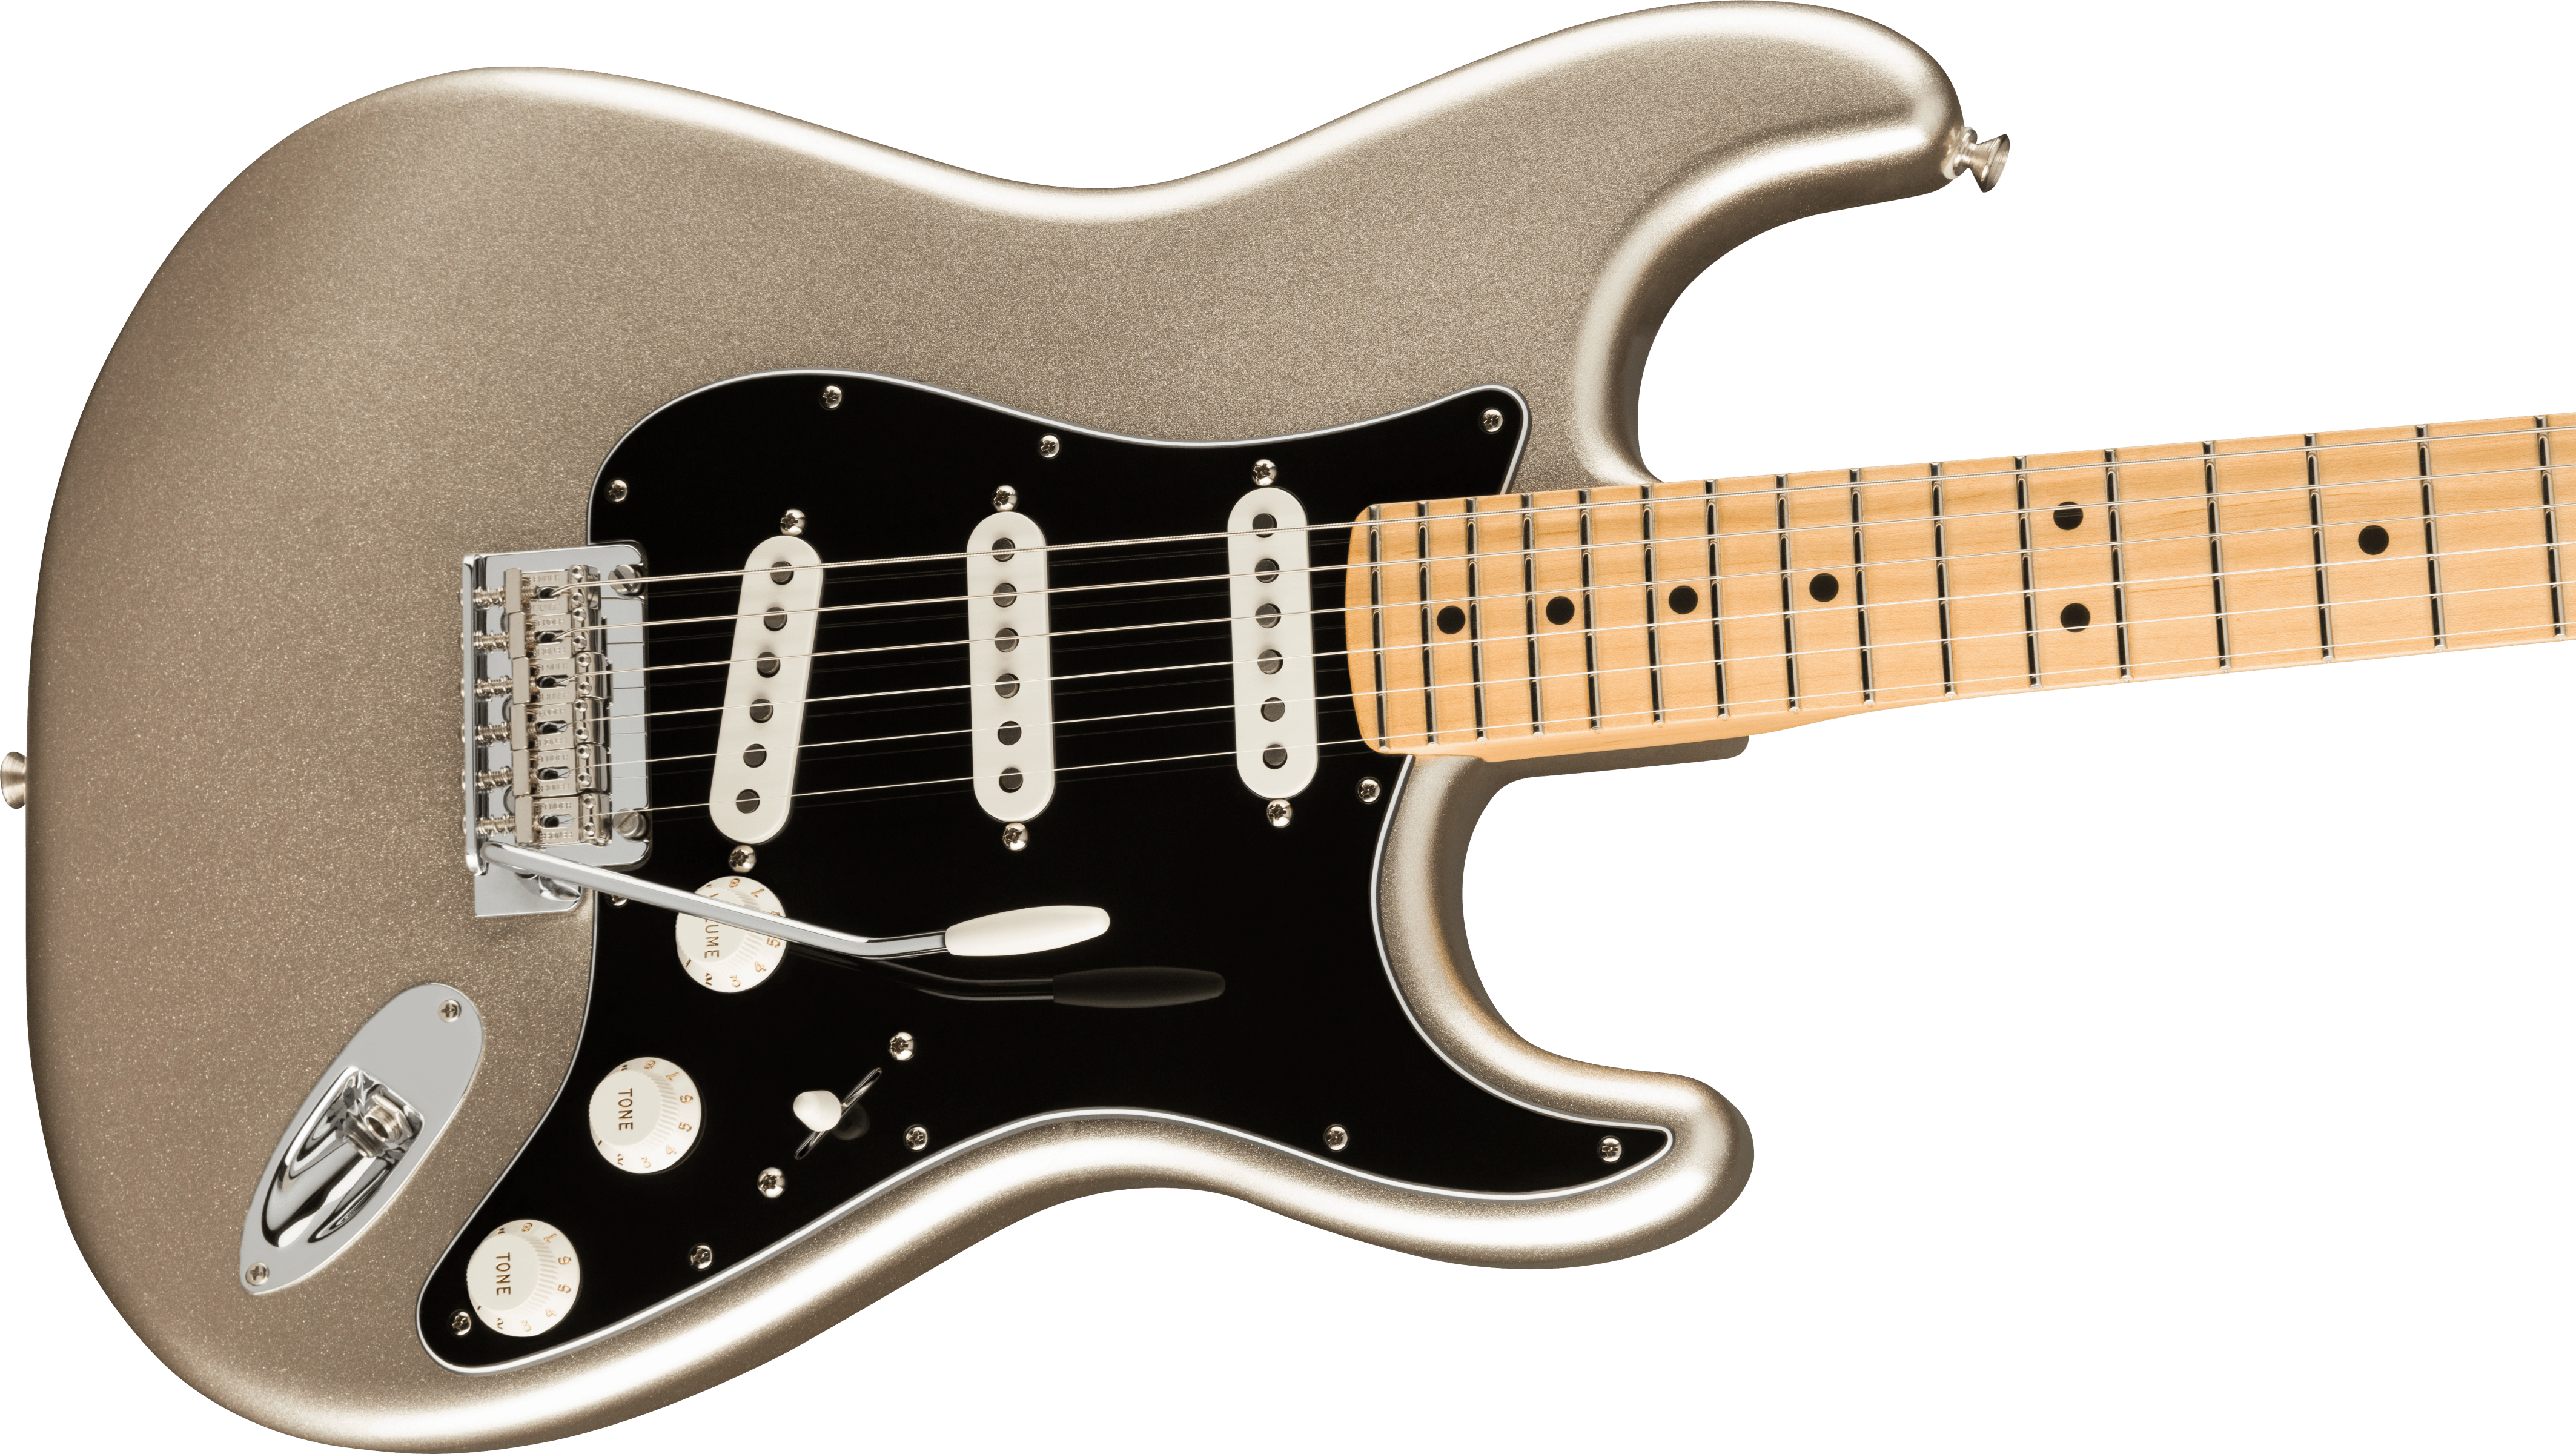 75th Anniversary Stratocaster®, Maple Fingerboard, Diamond Anniversary